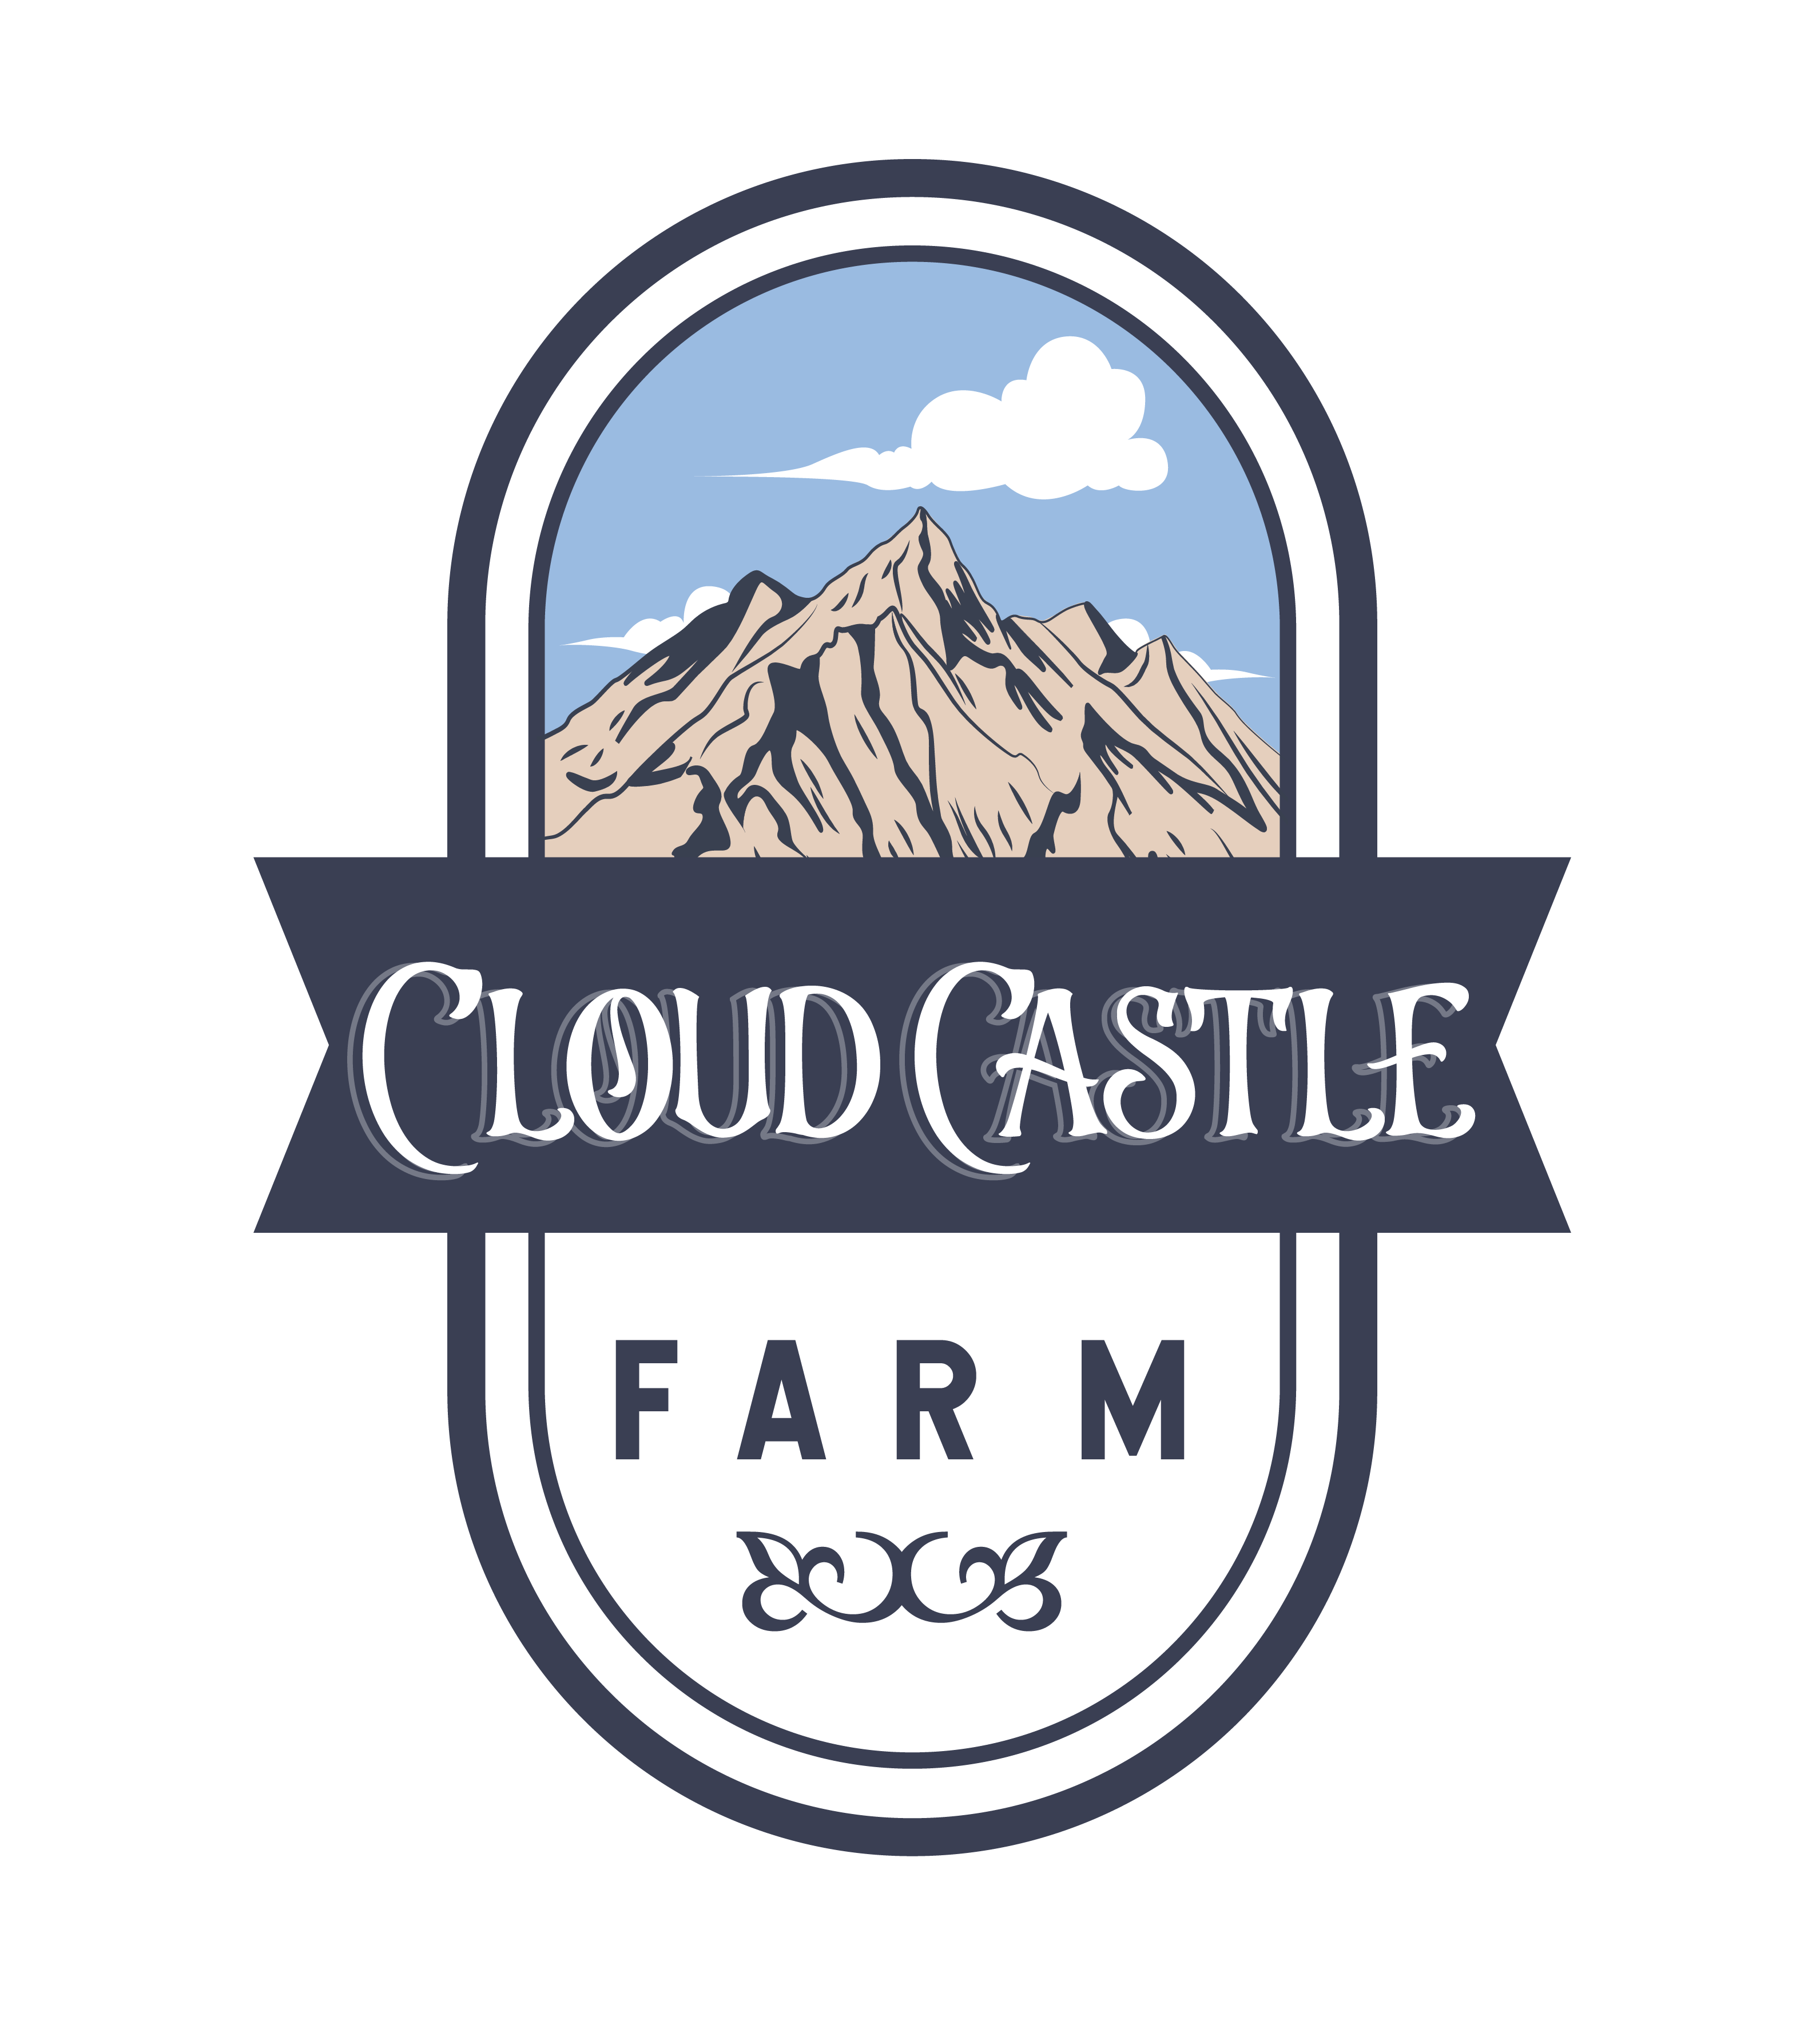 Cloud Castle Farm - Logo